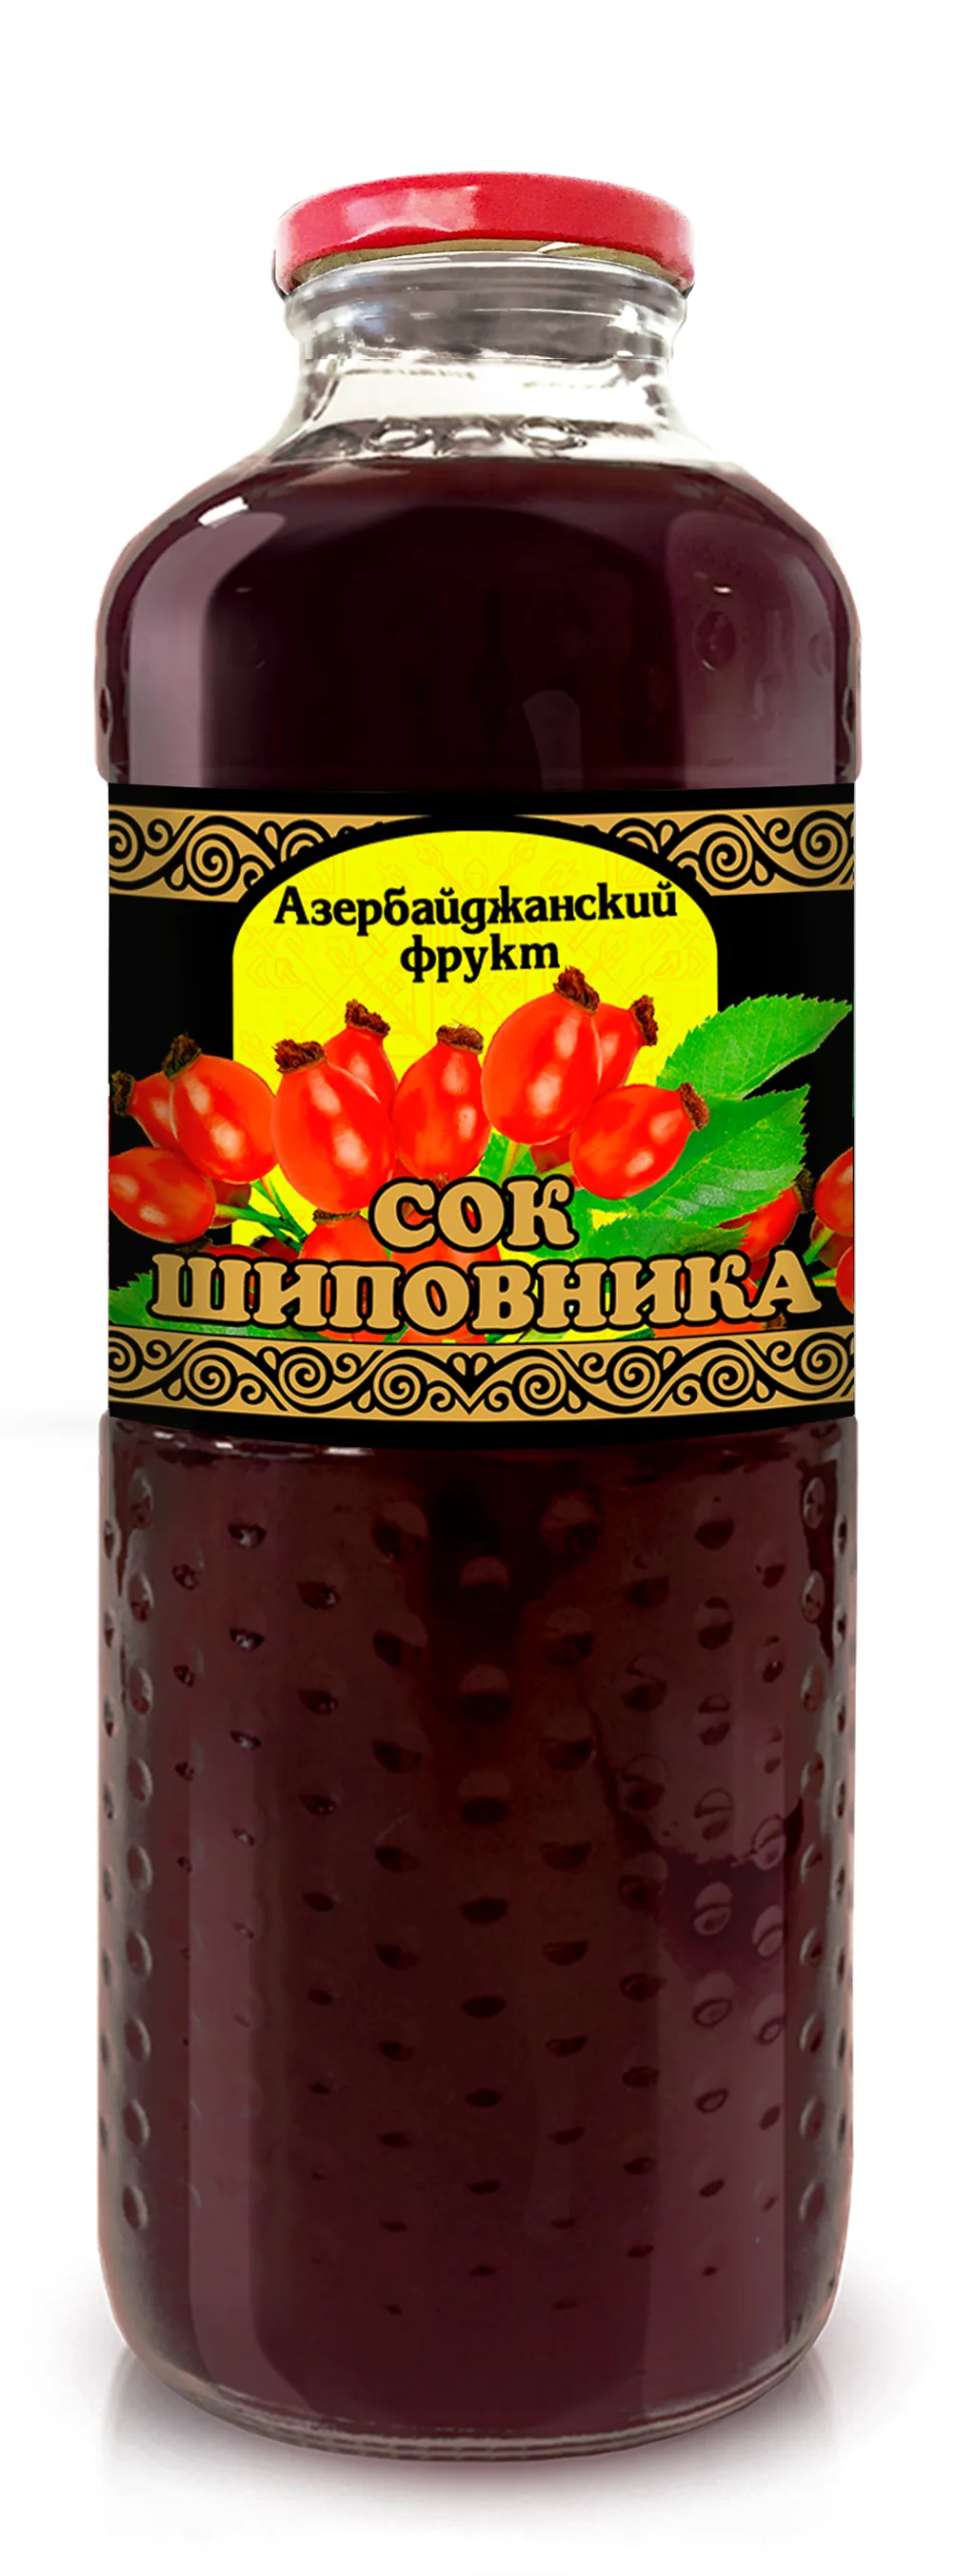 фотография продукта Сок шиповника "Азербайджанский фрукт"